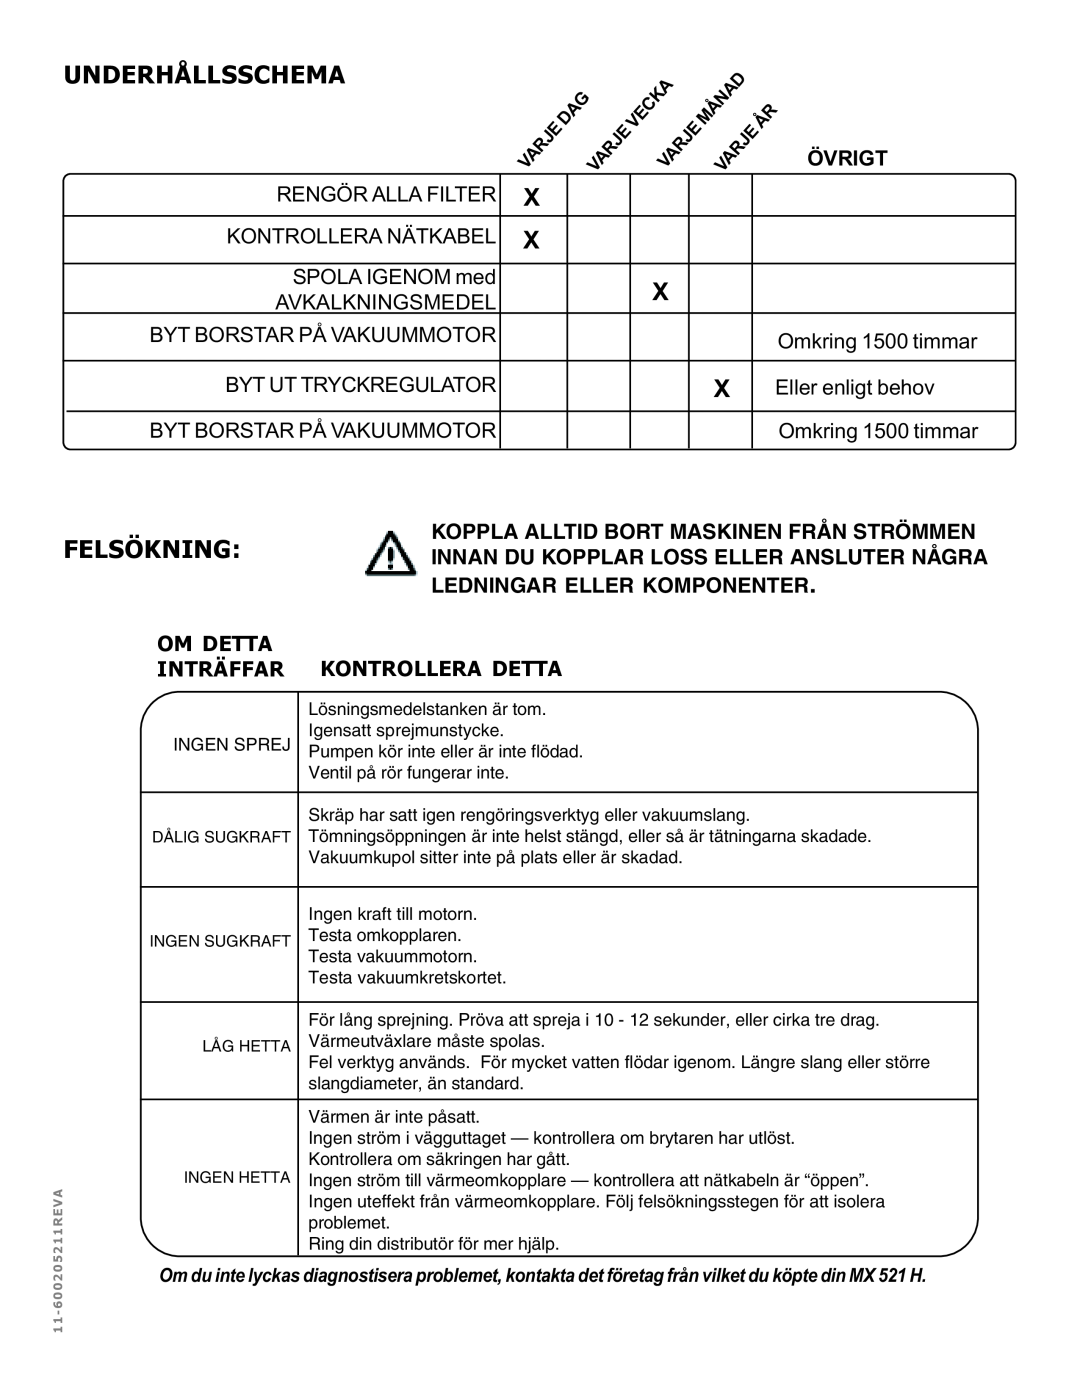 Nilfisk-ALTO MX 521 H manual Underhållsschema, Felsökning, Övrigt 